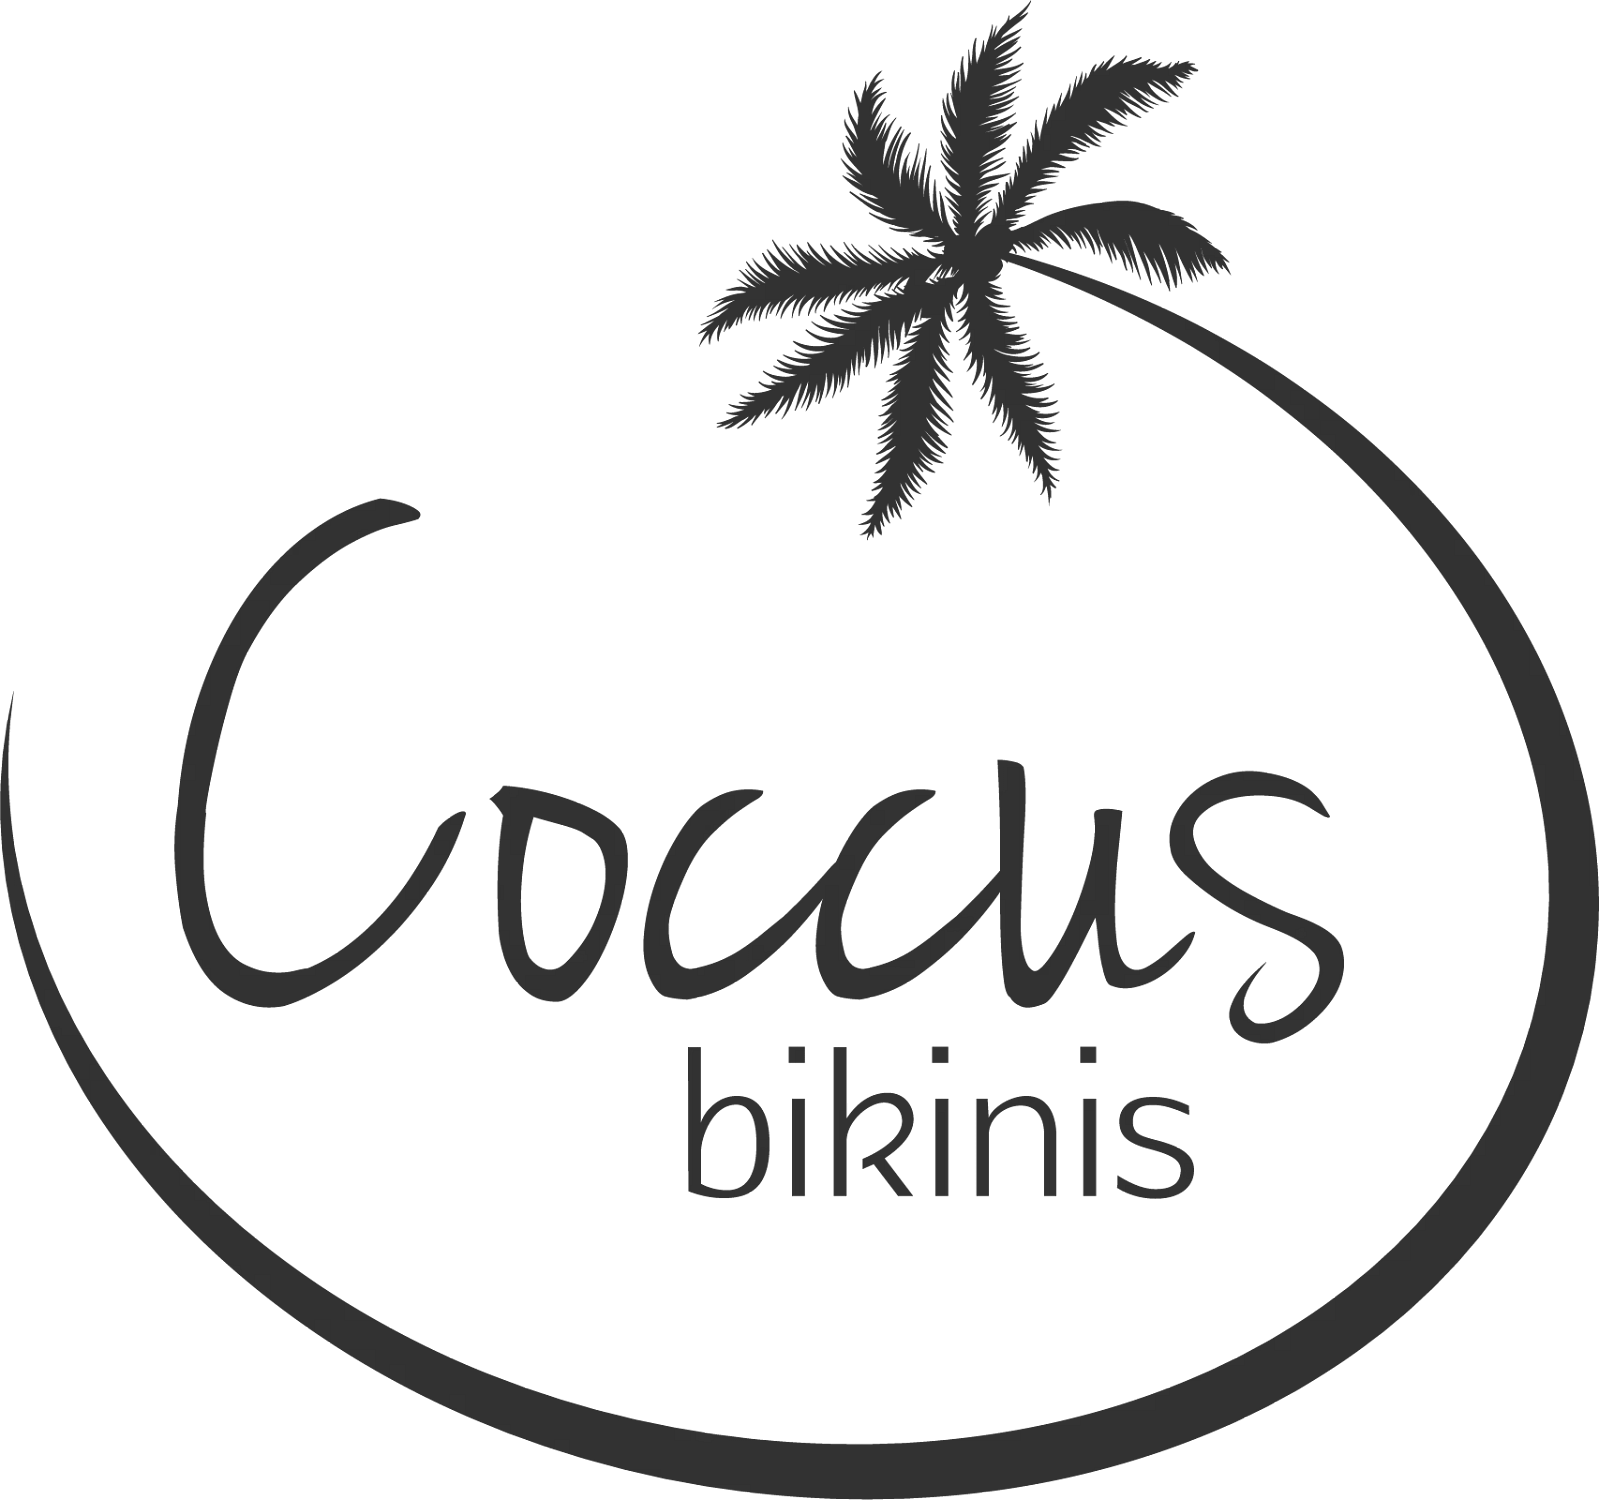 Coccus-logo_313131